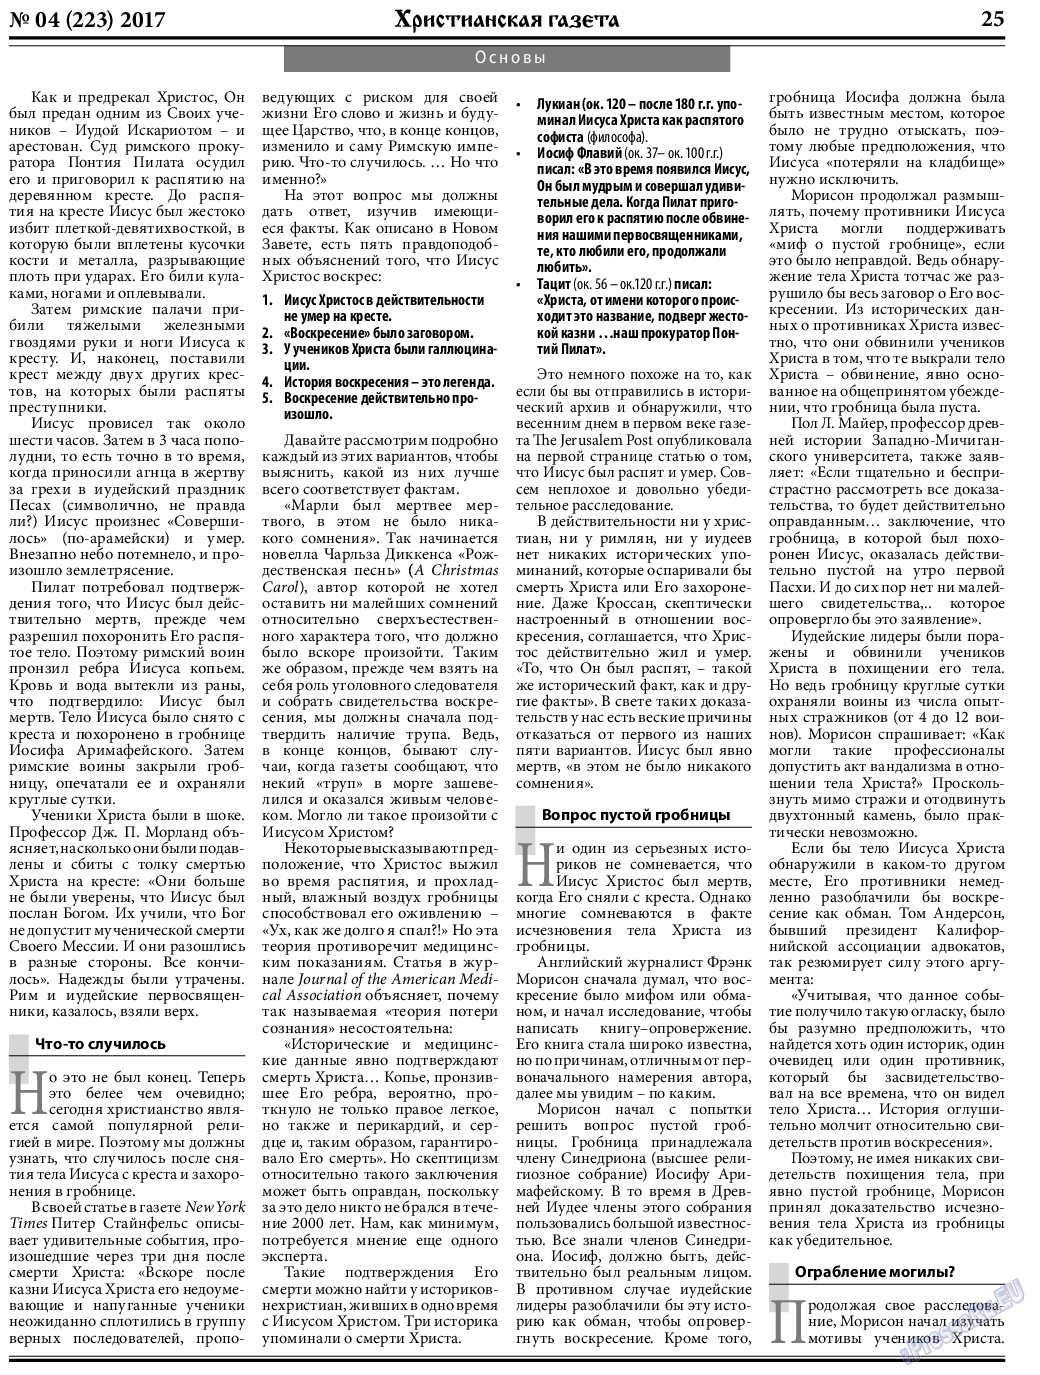 Христианская газета, газета. 2017 №4 стр.25